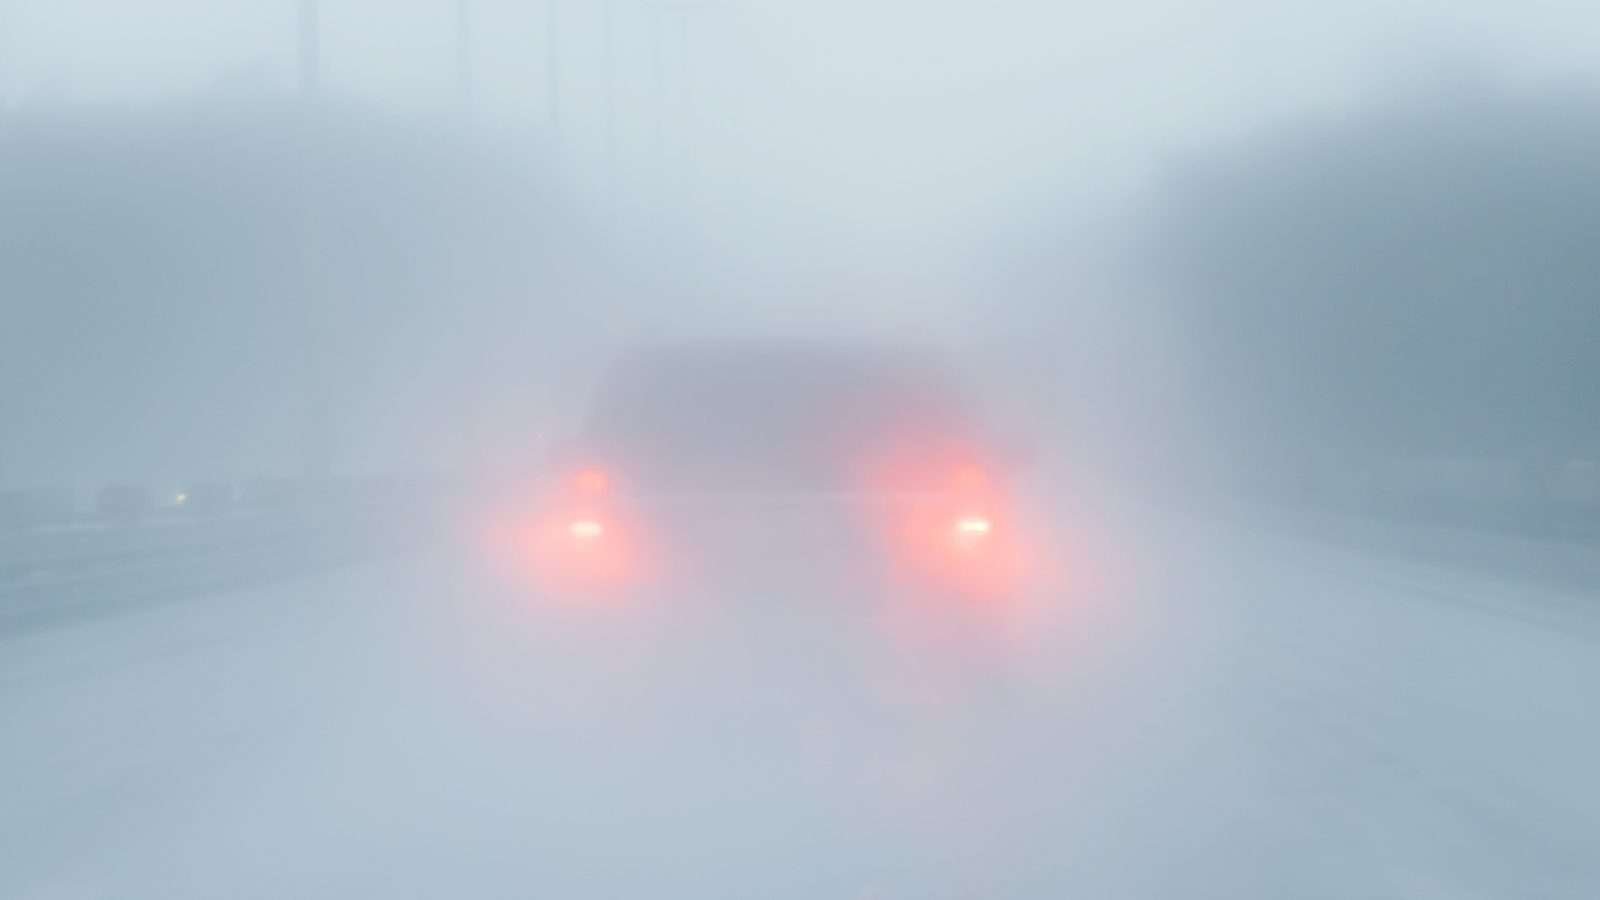 Thời tiết nhiều sương mù, đi xe làm sao cho đúng?